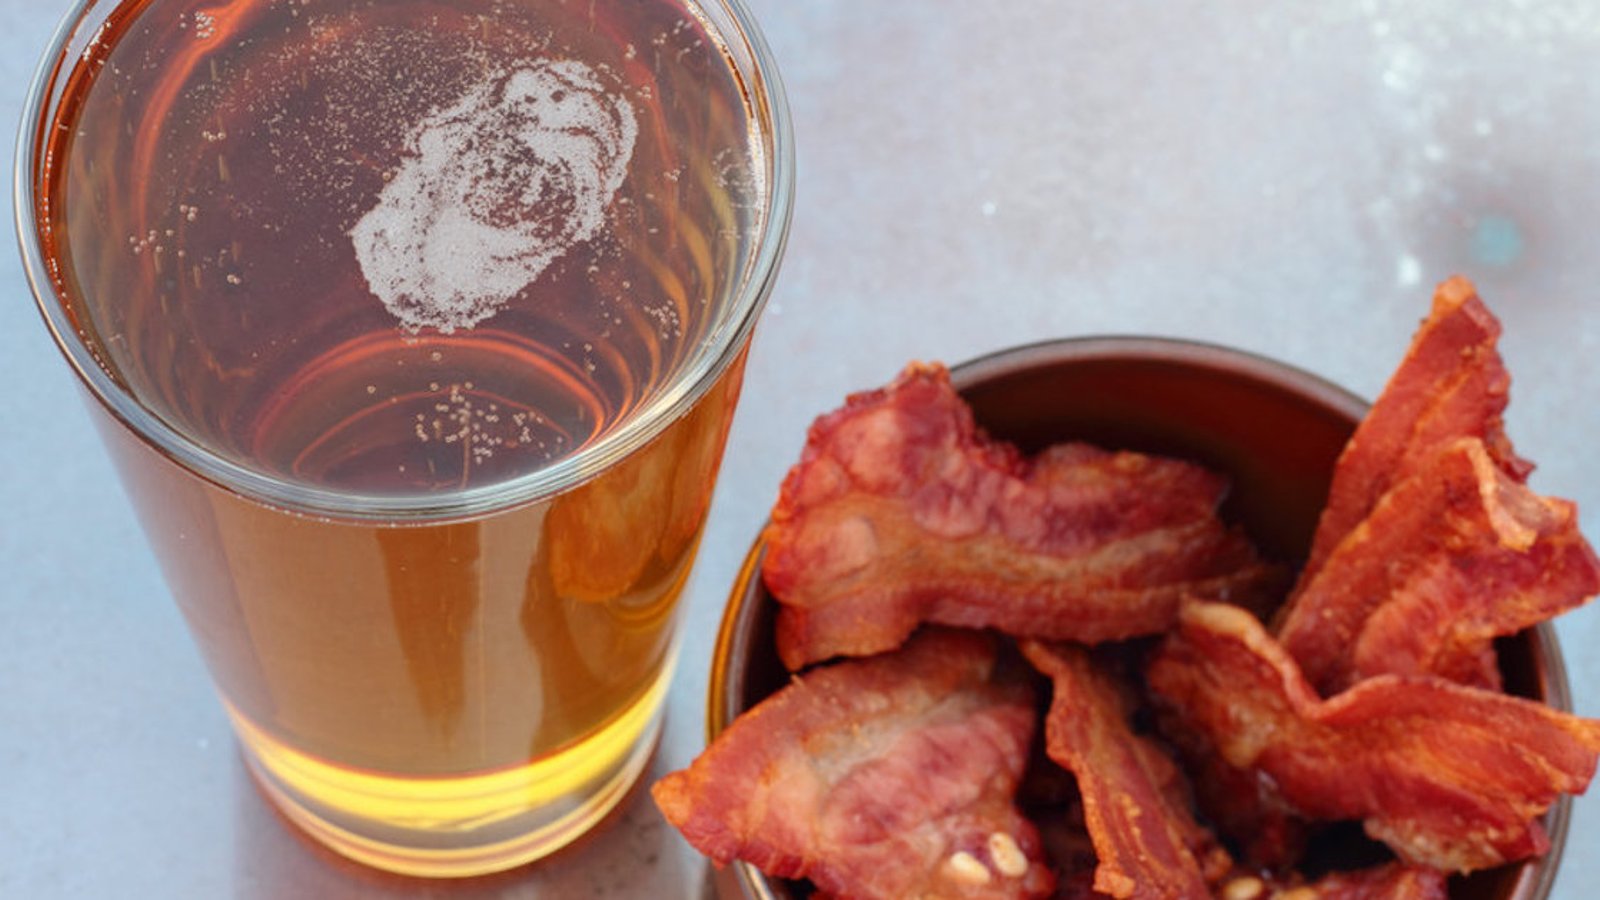 Réduire votre consommation de bacon et d’alcool pourrait abaisser votre risque de cancer de 40%